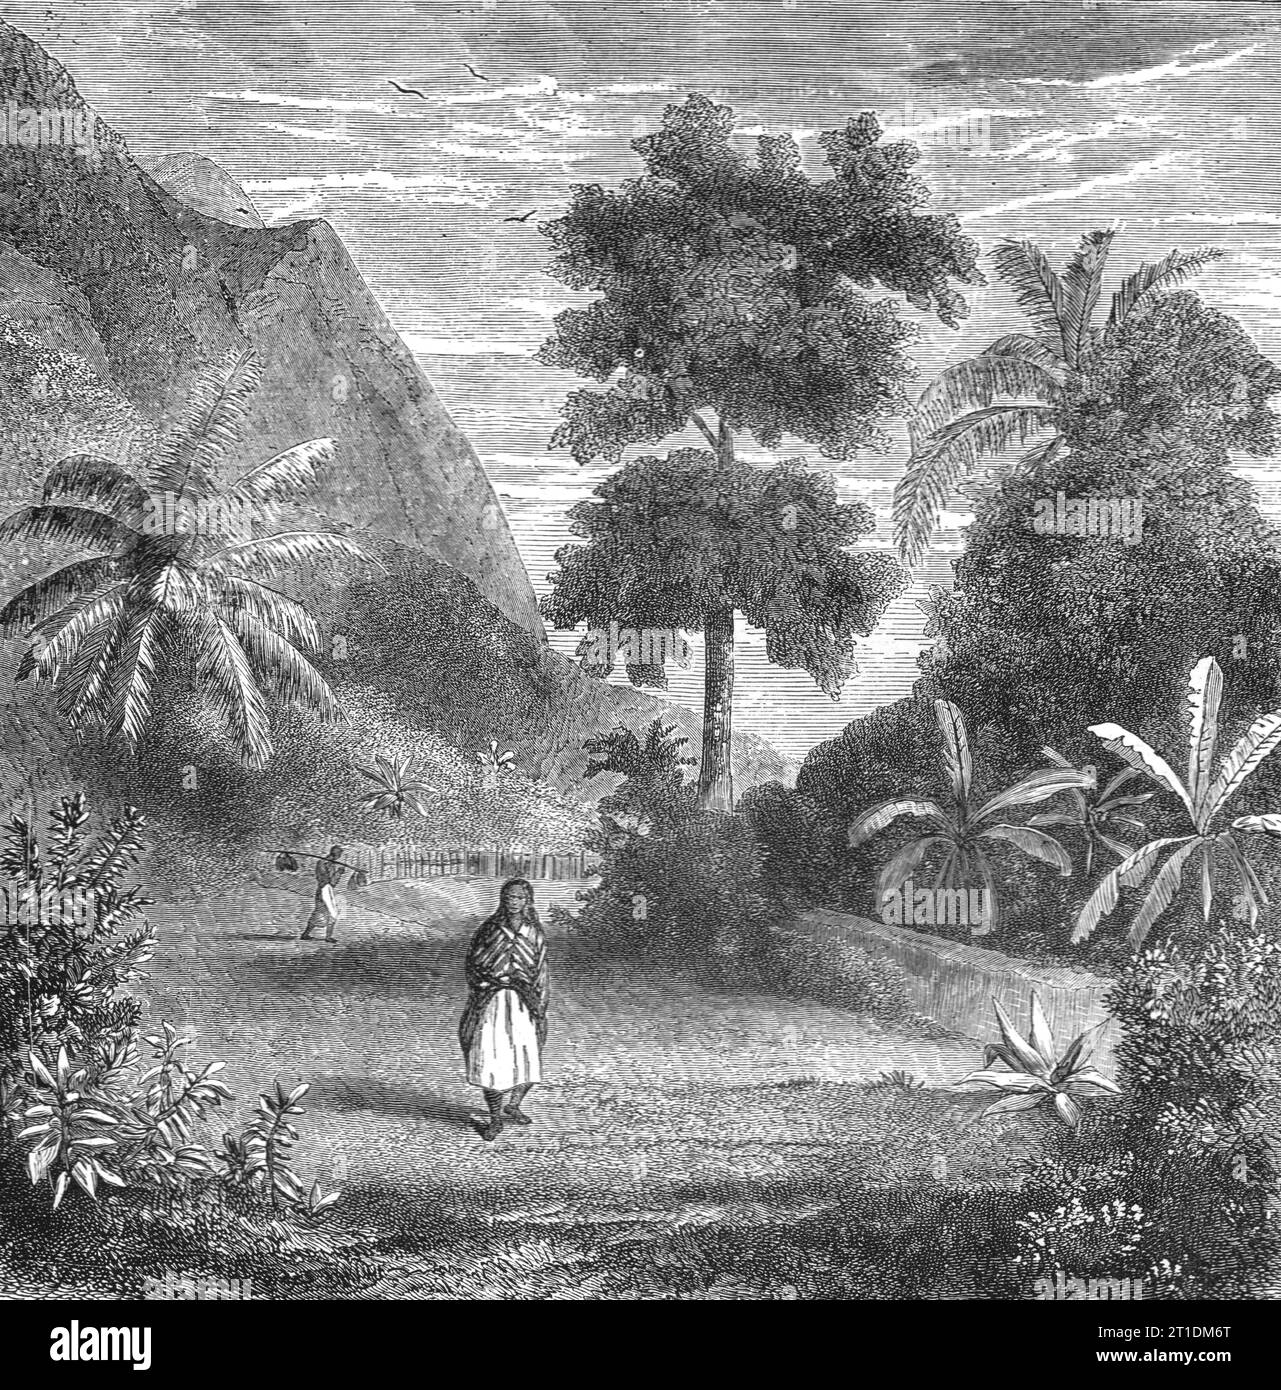 "Vegetazione di Tahiti; speculazioni riguardanti ex geografie meridionali", 1875. Da "Illustrated Travels" di H.W. Bates. [Cassell, Petter e Galpin, c1880, Londra] e Galpin. Foto Stock